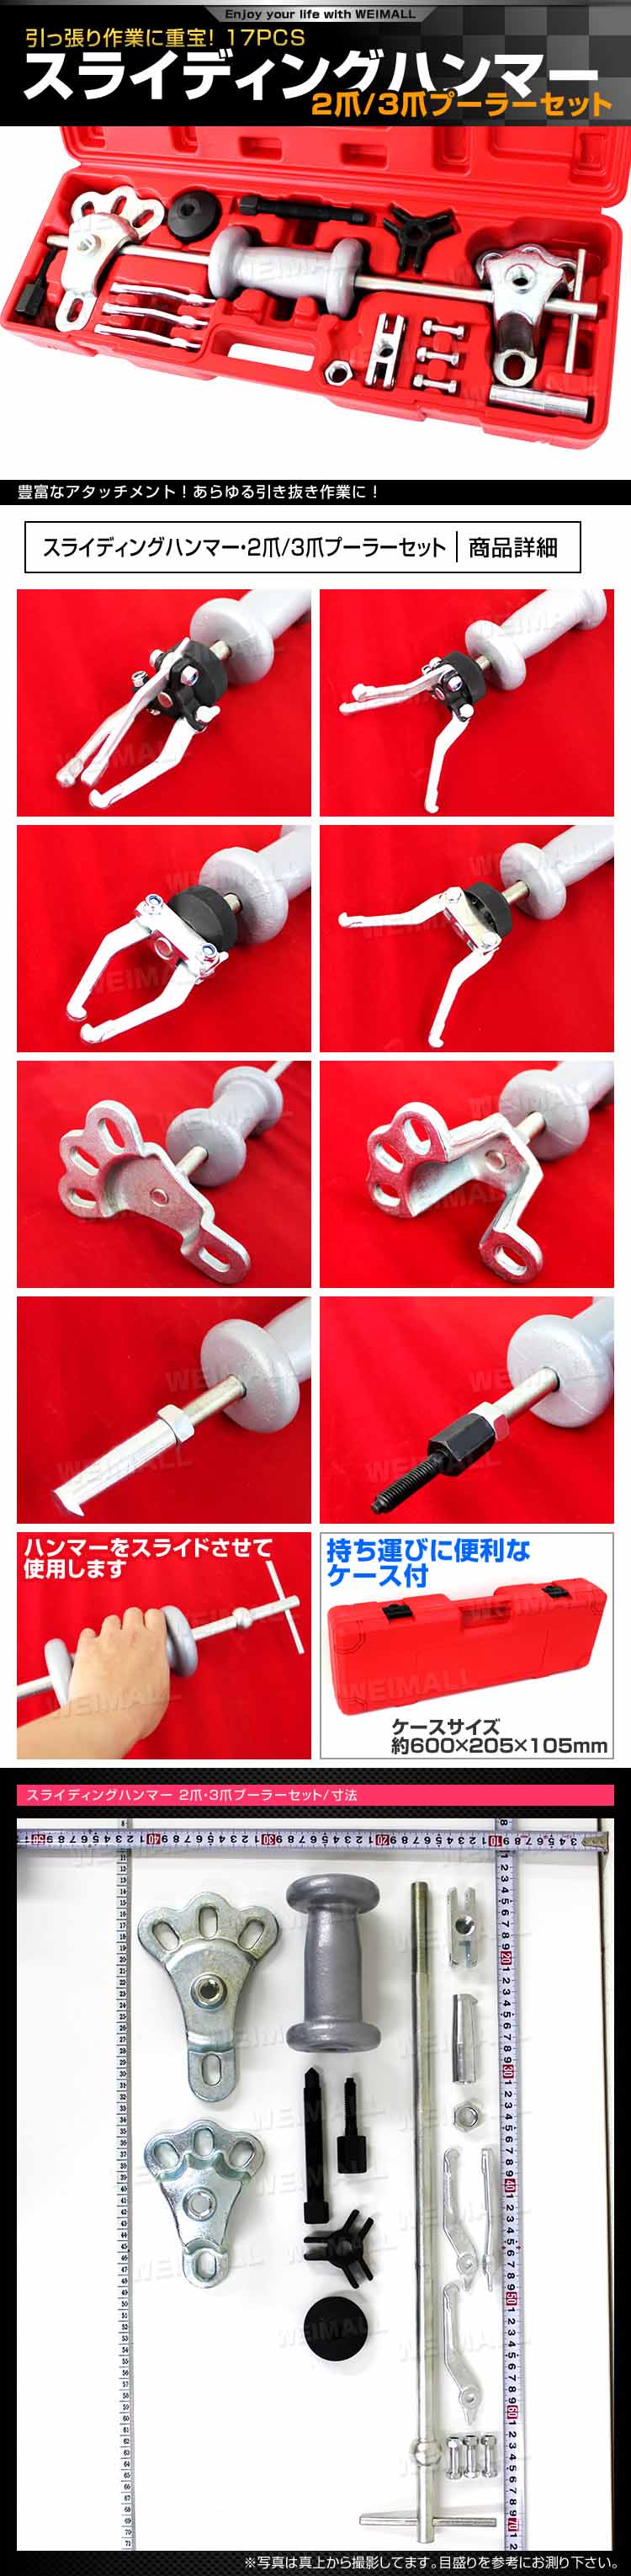 2099円 日本人気超絶の スライディングハンマー2爪3爪プーラーセット ドライブラインの修理 交換や板金作業に欠かせない工具です